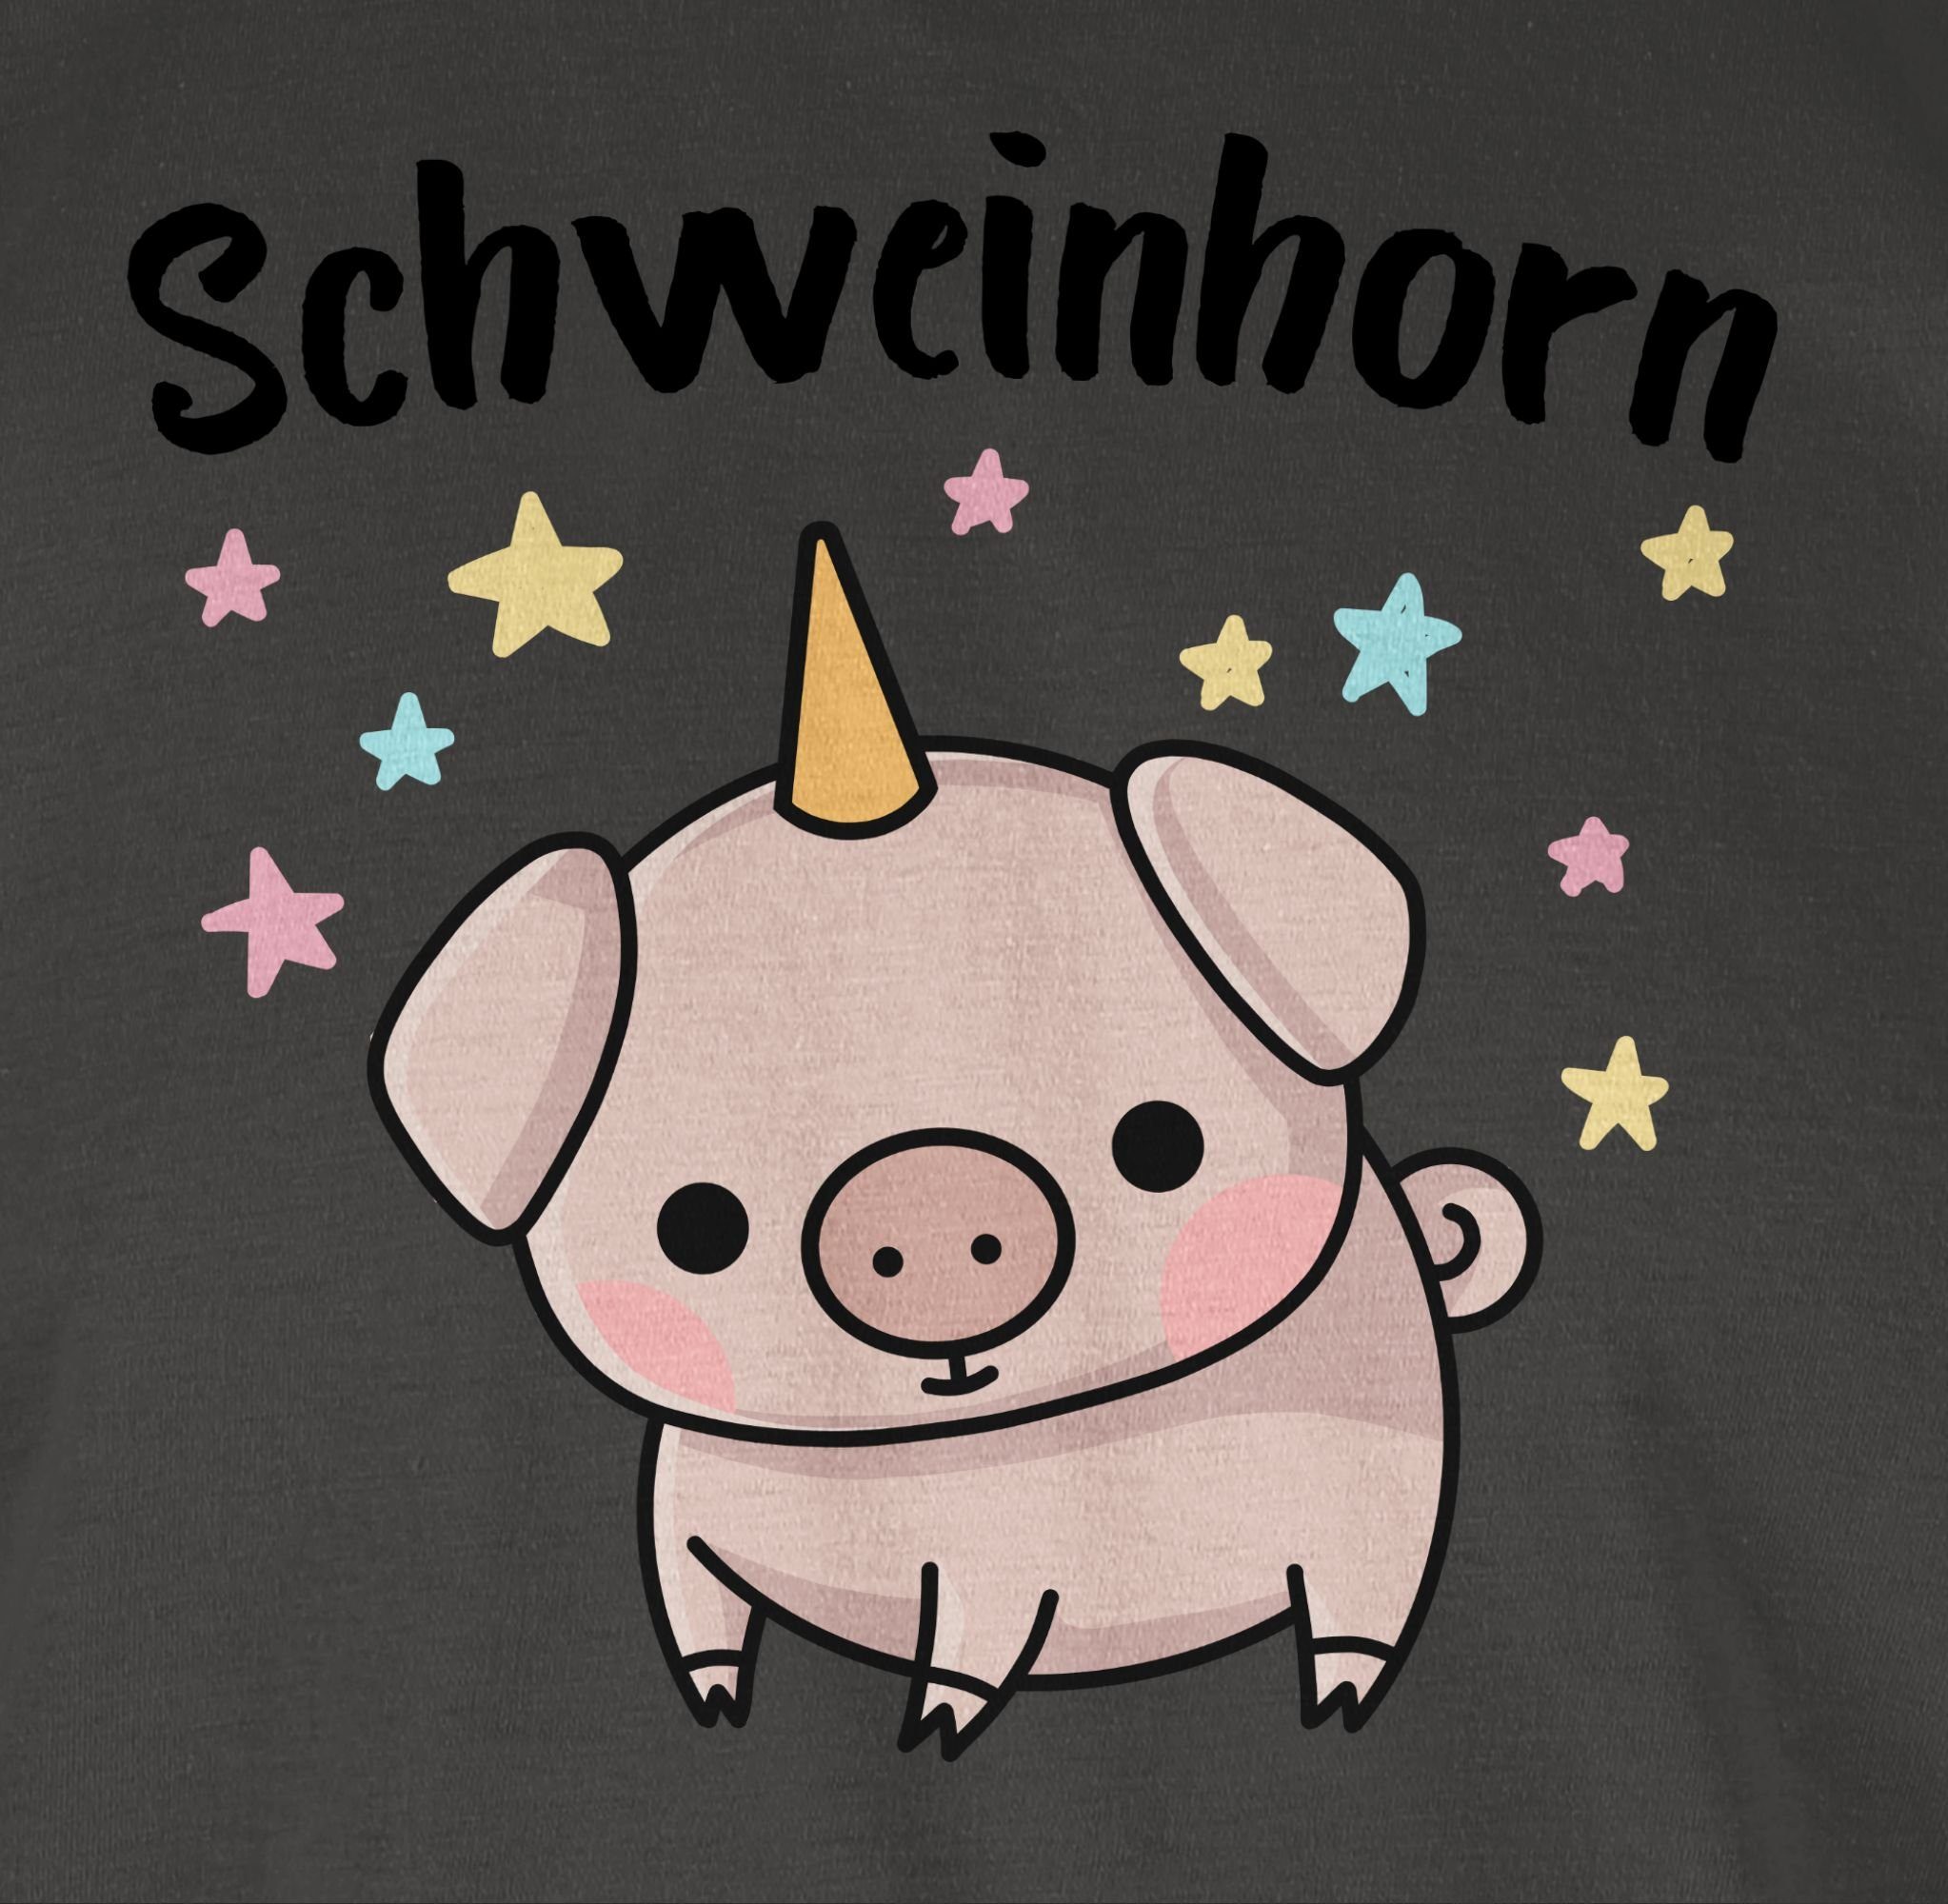 Outfit Karneval 1 Schweinhorn Dunkelgrau Shirtracer T-Shirt